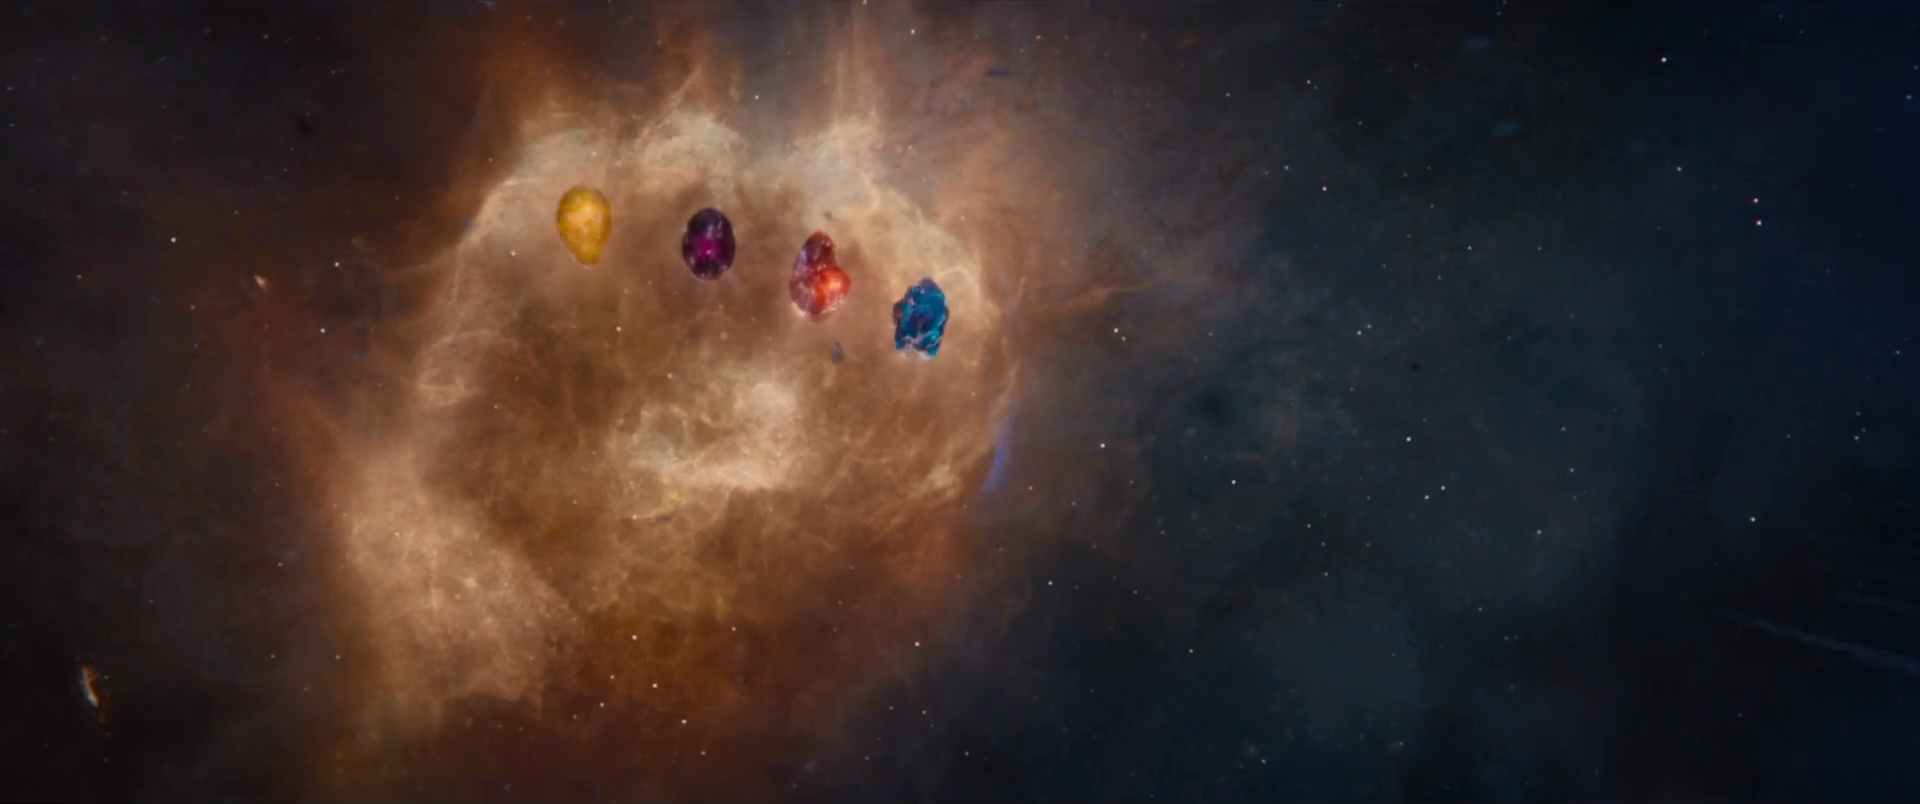 six infinity stones marvel movies